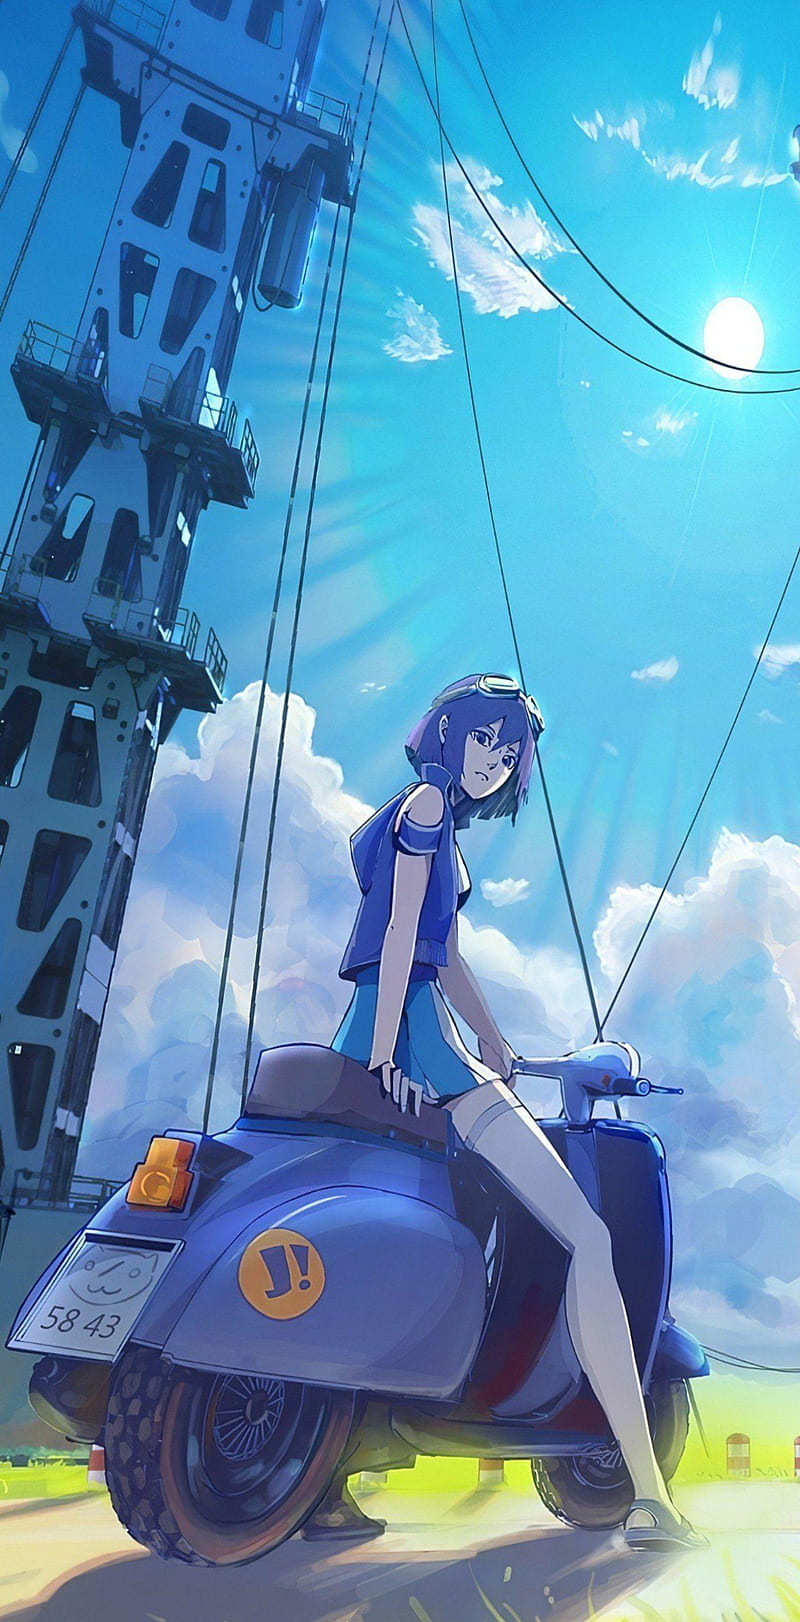 Long Riders! Cycling Manga Gets Anime - News - Anime News Network